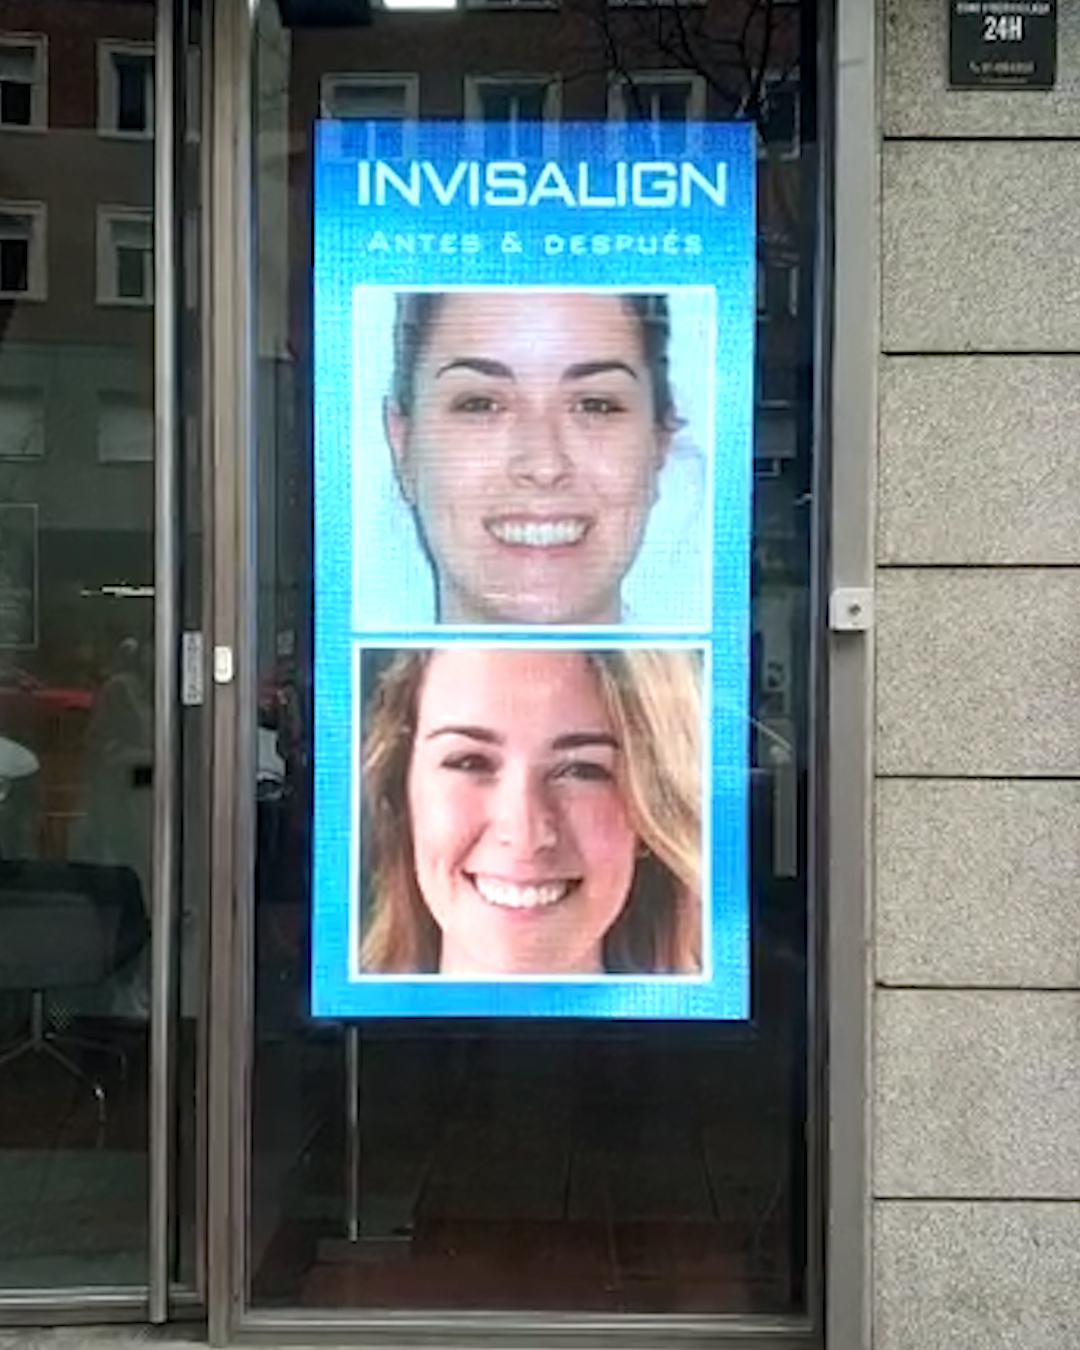 Pantalla de led vertical detrás de un escaparate. En la pantalla se reproducen una publicidad haciendo referencia al tratamiento de invisalign.